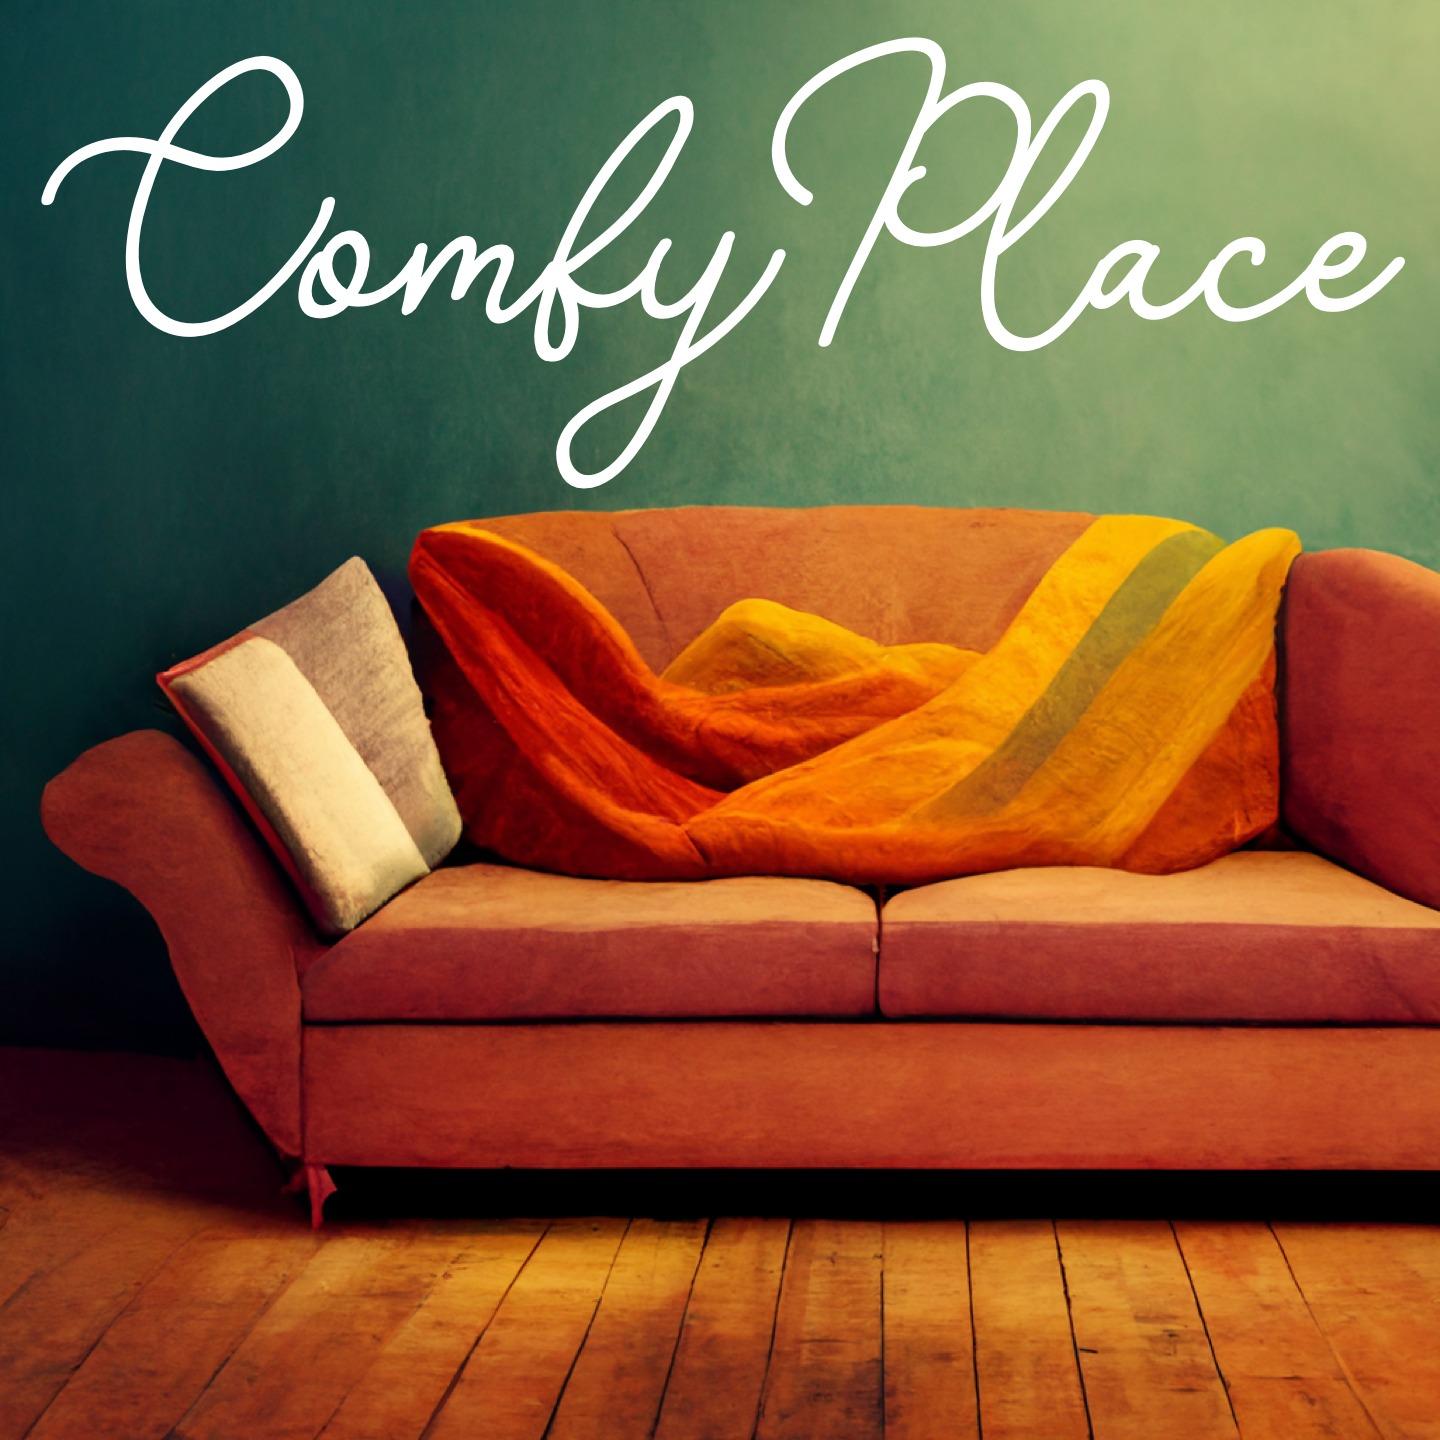 Comfy Place